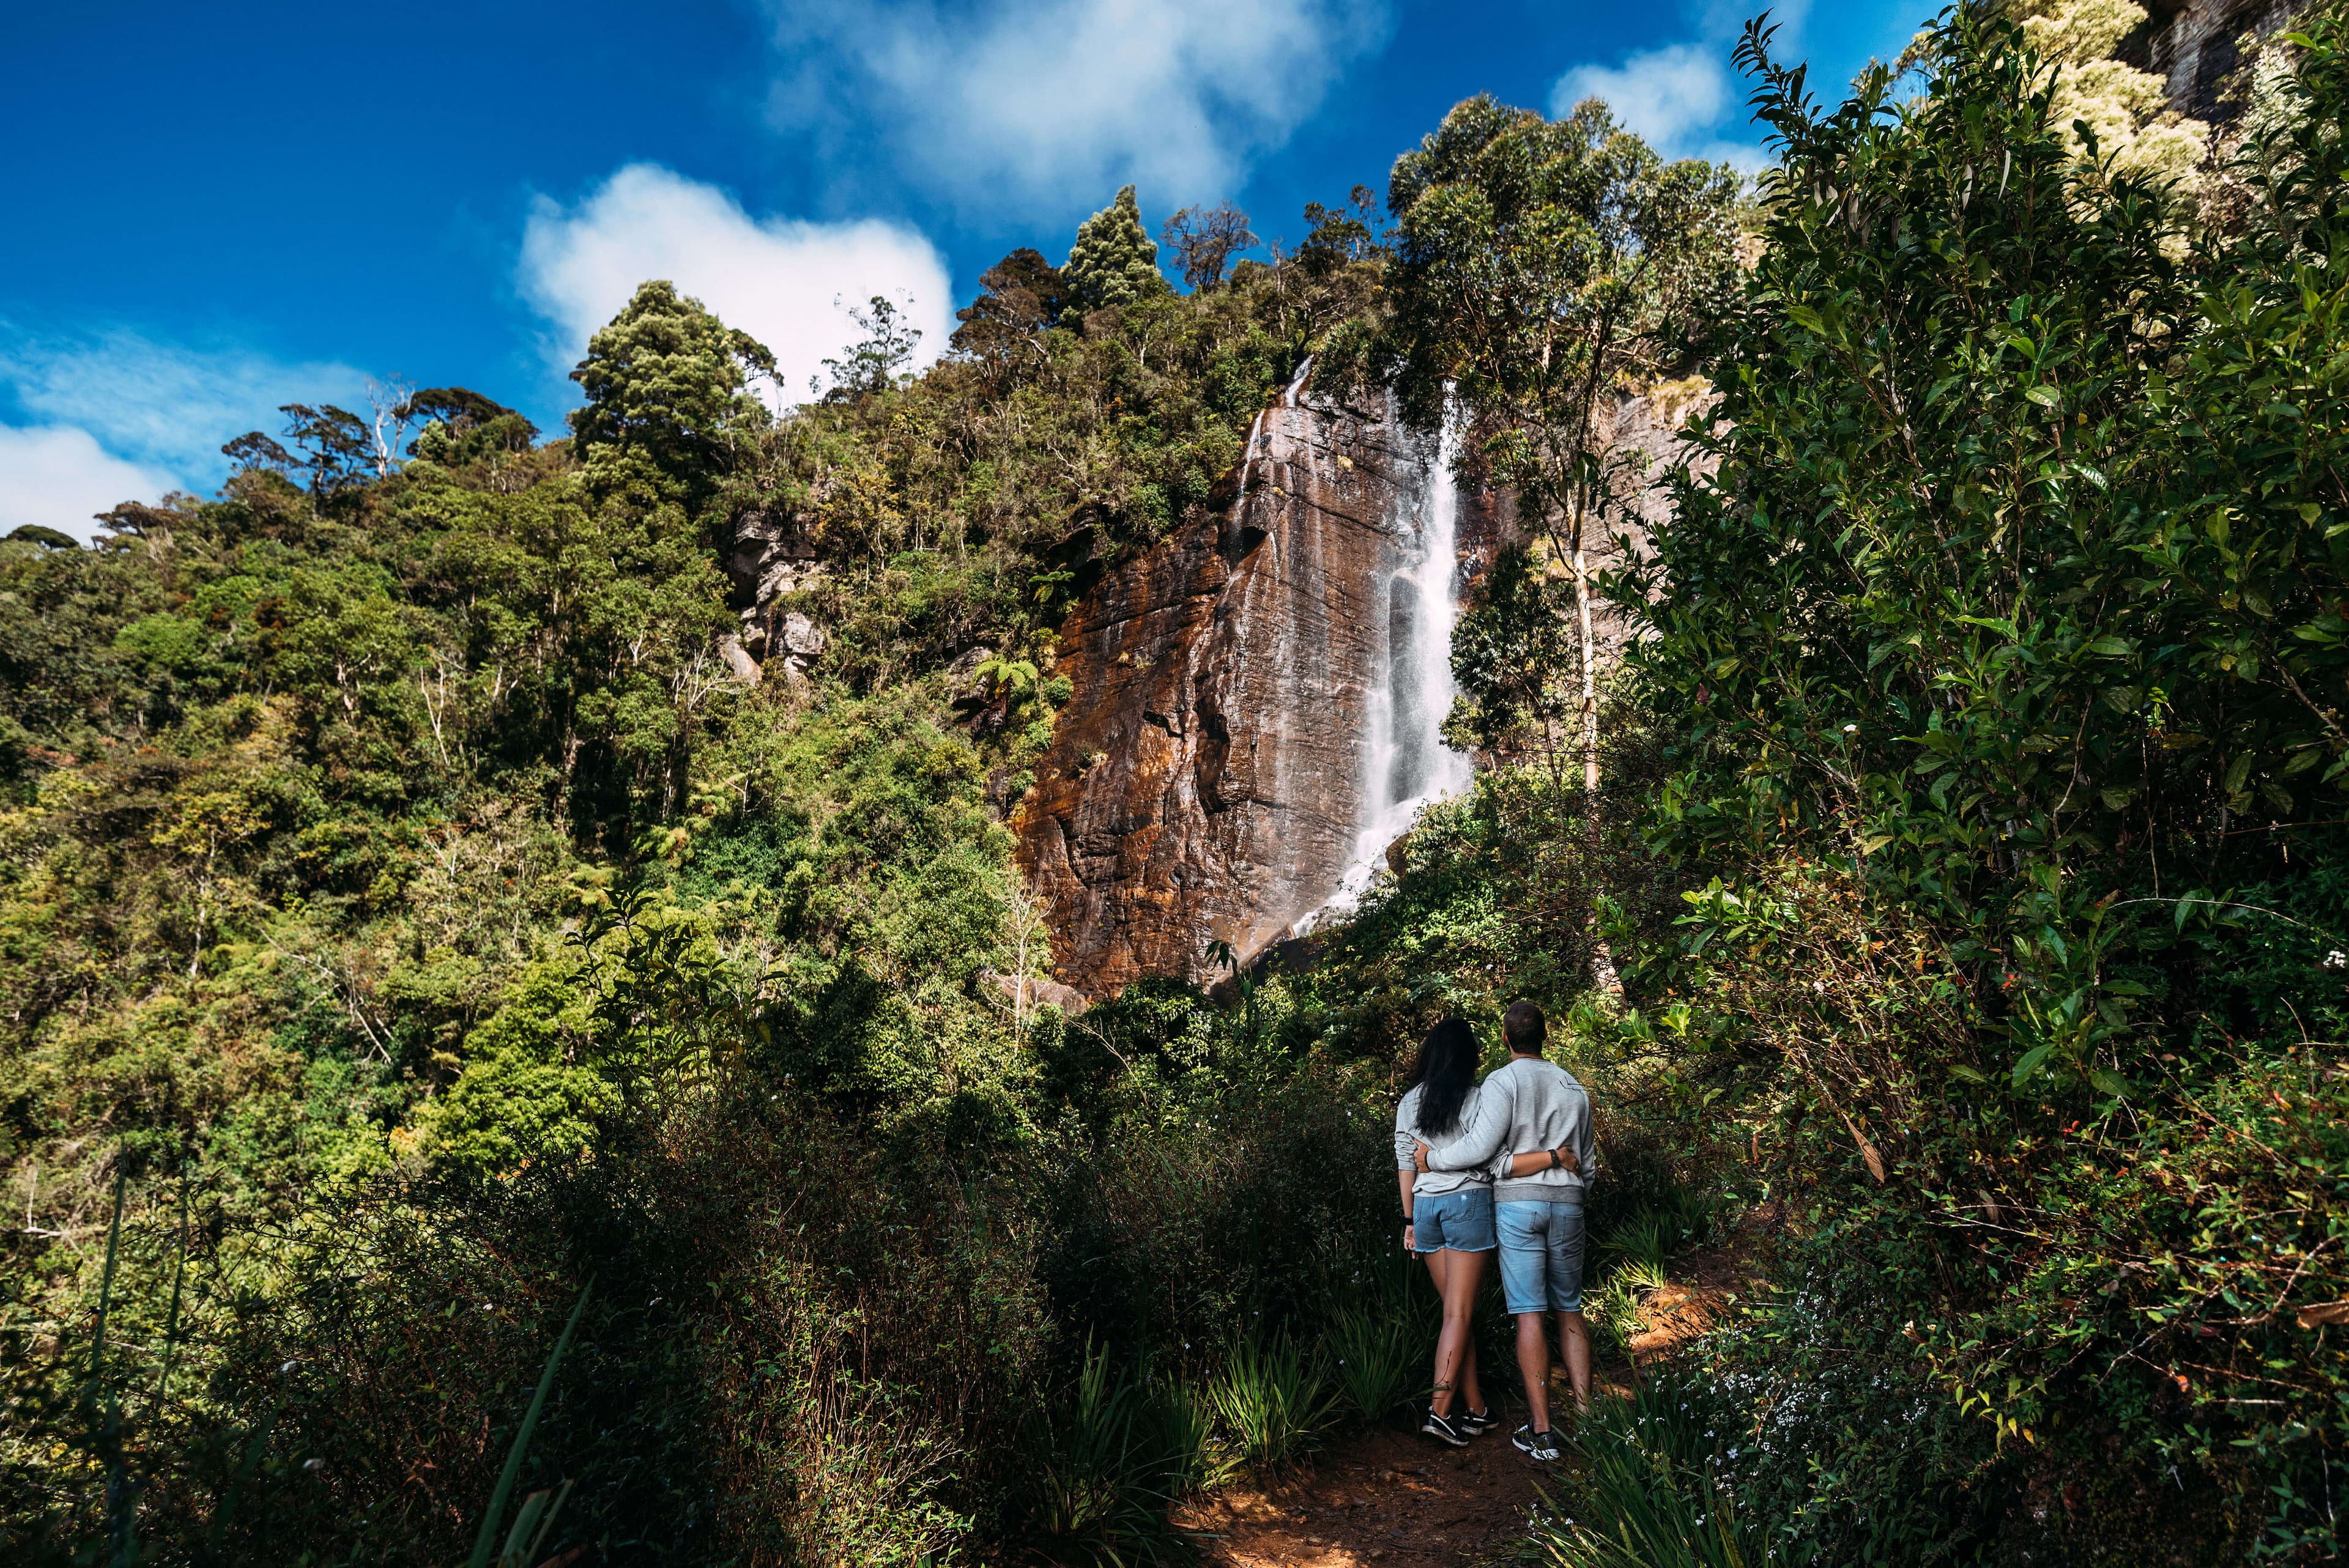 Una pareja explora la belleza de la naturaleza y la cascada.